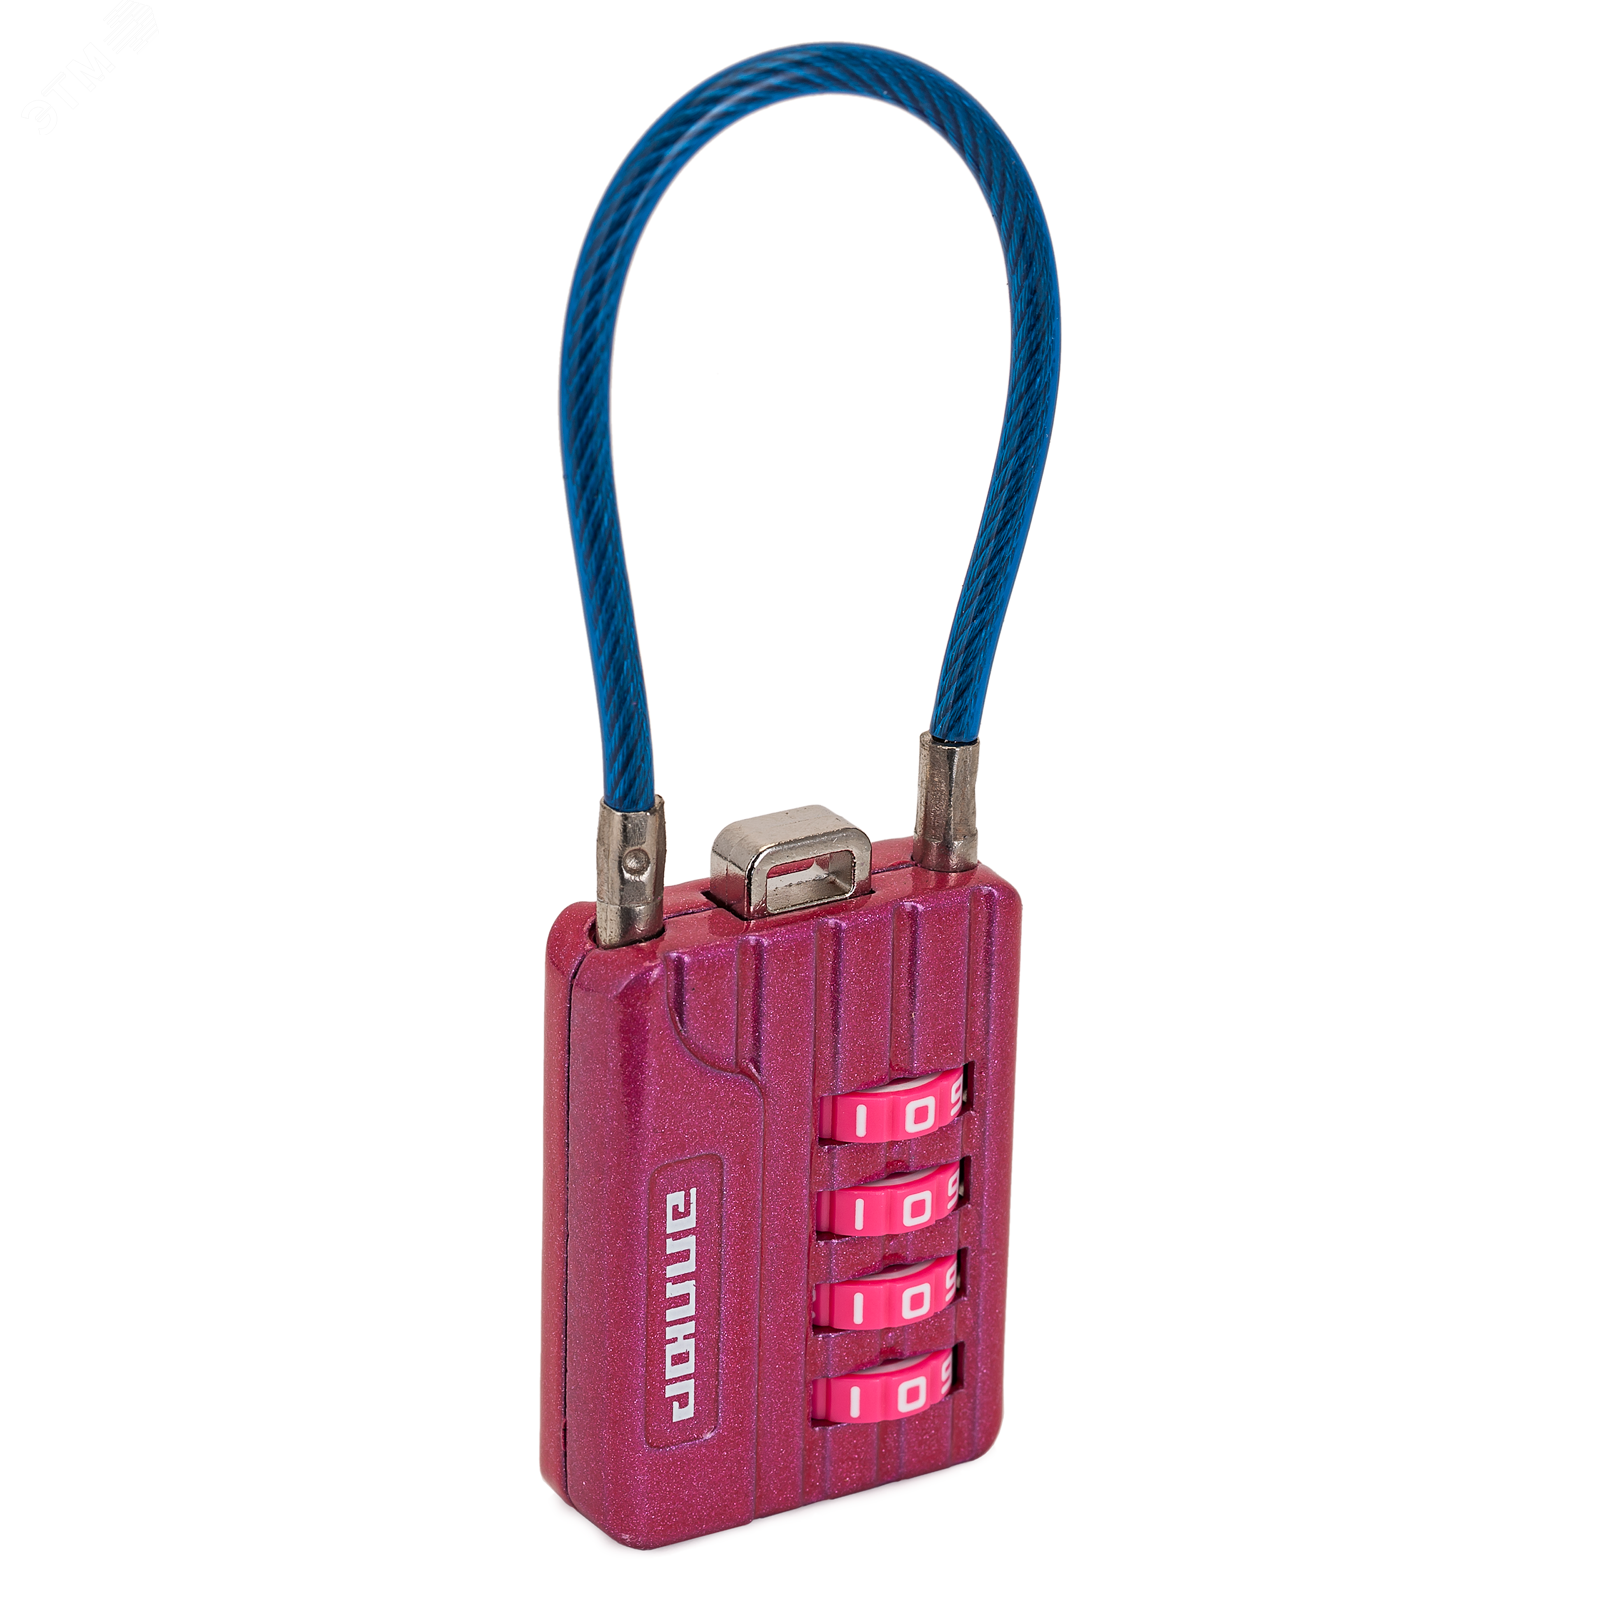 Замок кодовый с тросиком для защиты от вскрытия сумок, чемоданов и др. багажа, АЛЛЮР ВС1КТ-30/3 (H2) розовый 10156 ПТК Компания